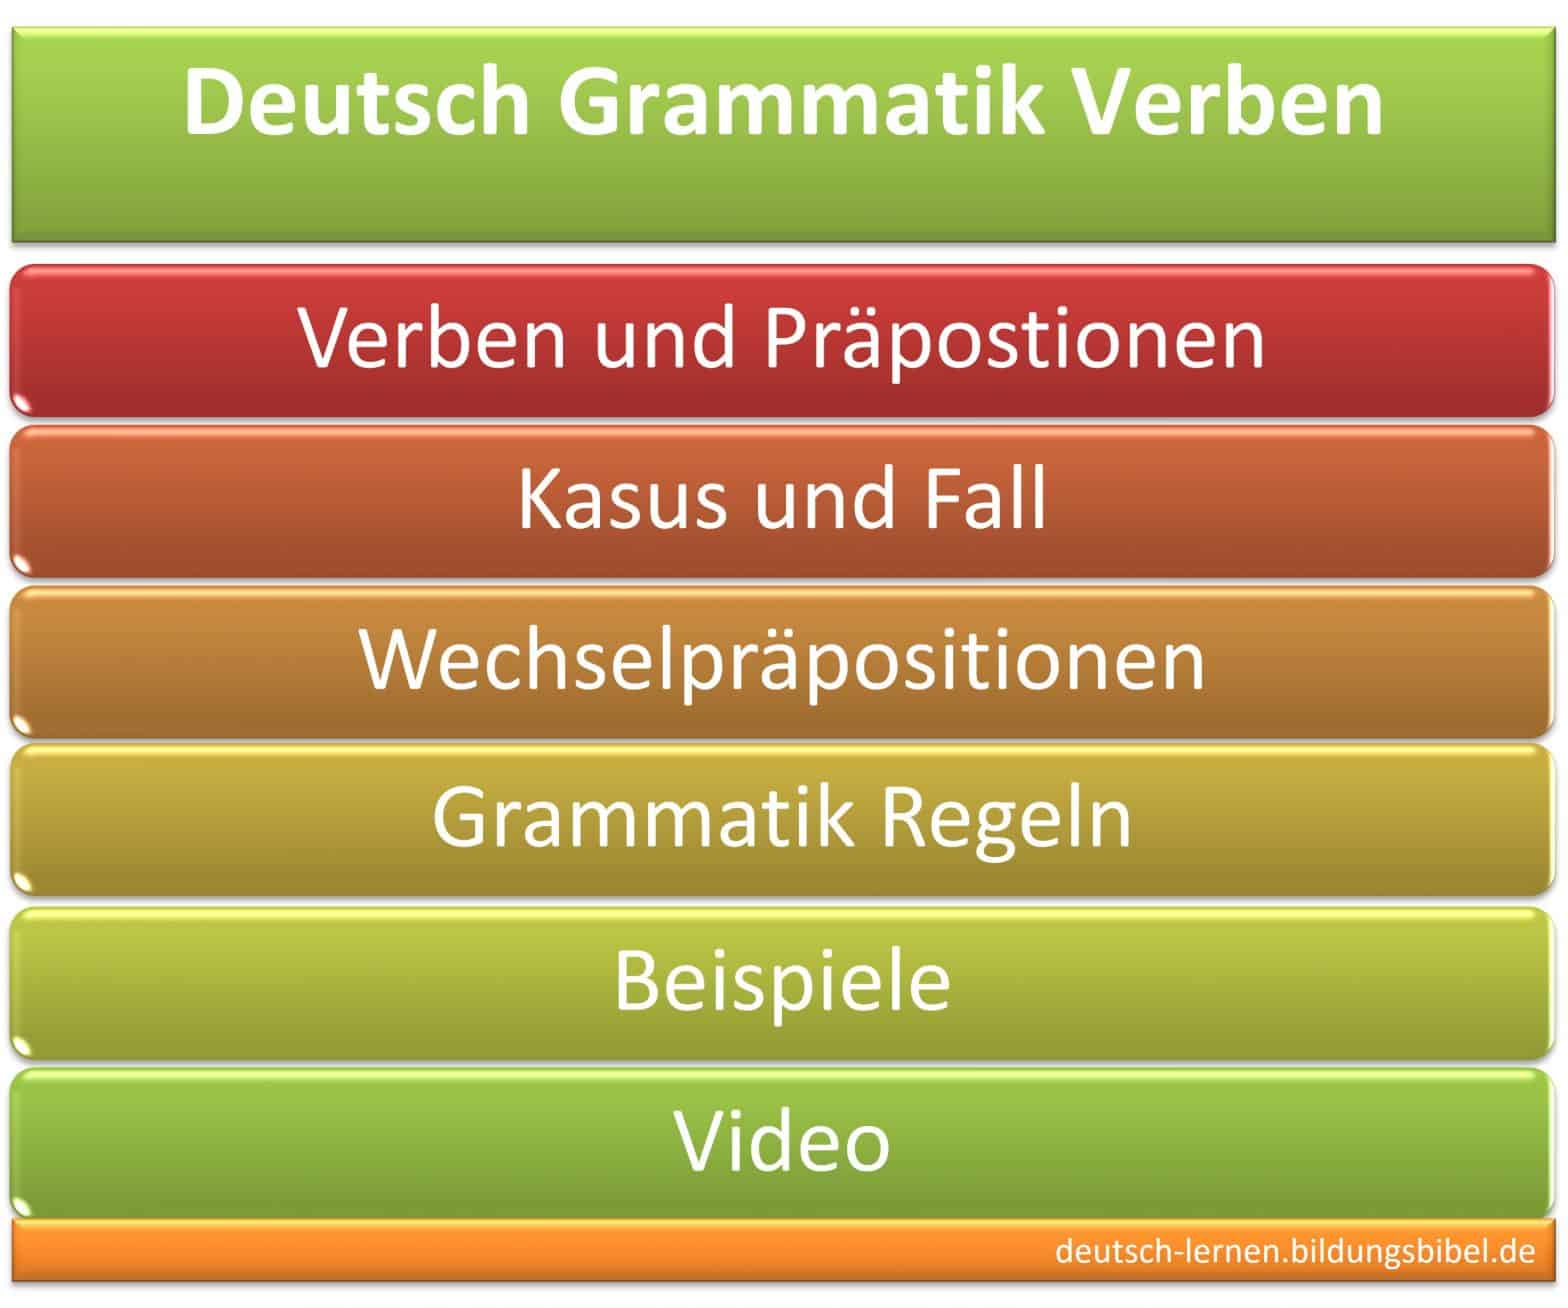 Verben Präpositionen, Regeln, Beispiele, Deutsch Grammatik, Video, Wechselpräpositionen, Kasus oder Fall, präpositionales Objekt.